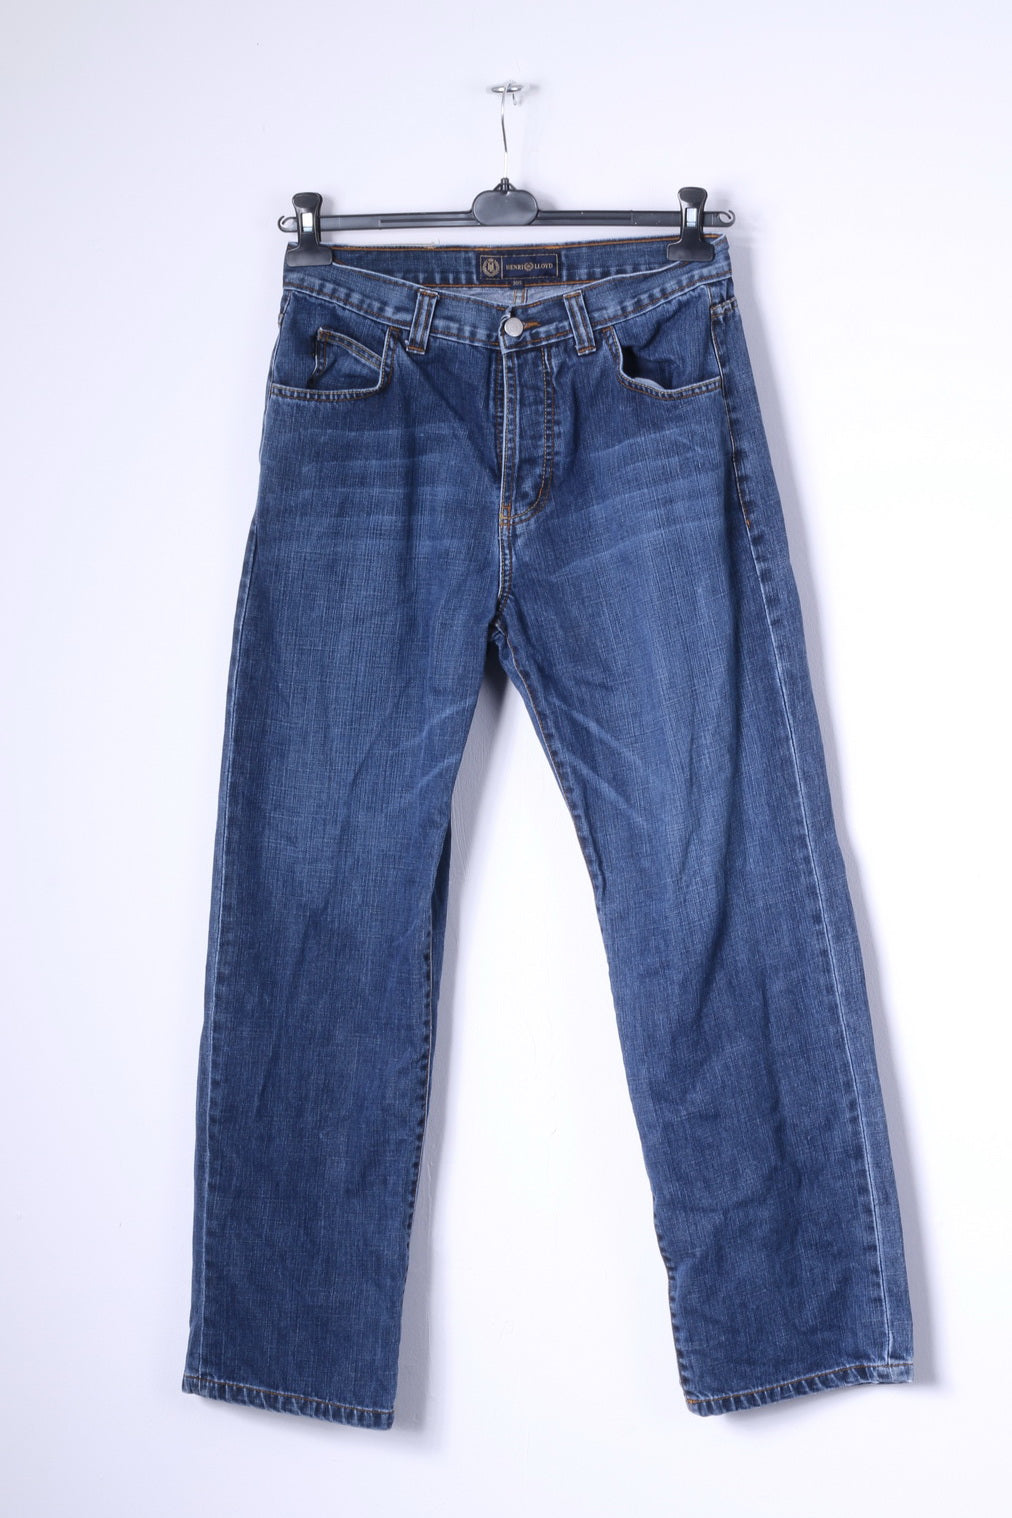 Problemer overdrivelse krans Henri Lloyd Mens 30 S Trousers Blue Jeans Cotton Denim Straight Leg Pa –  RetrospectClothes